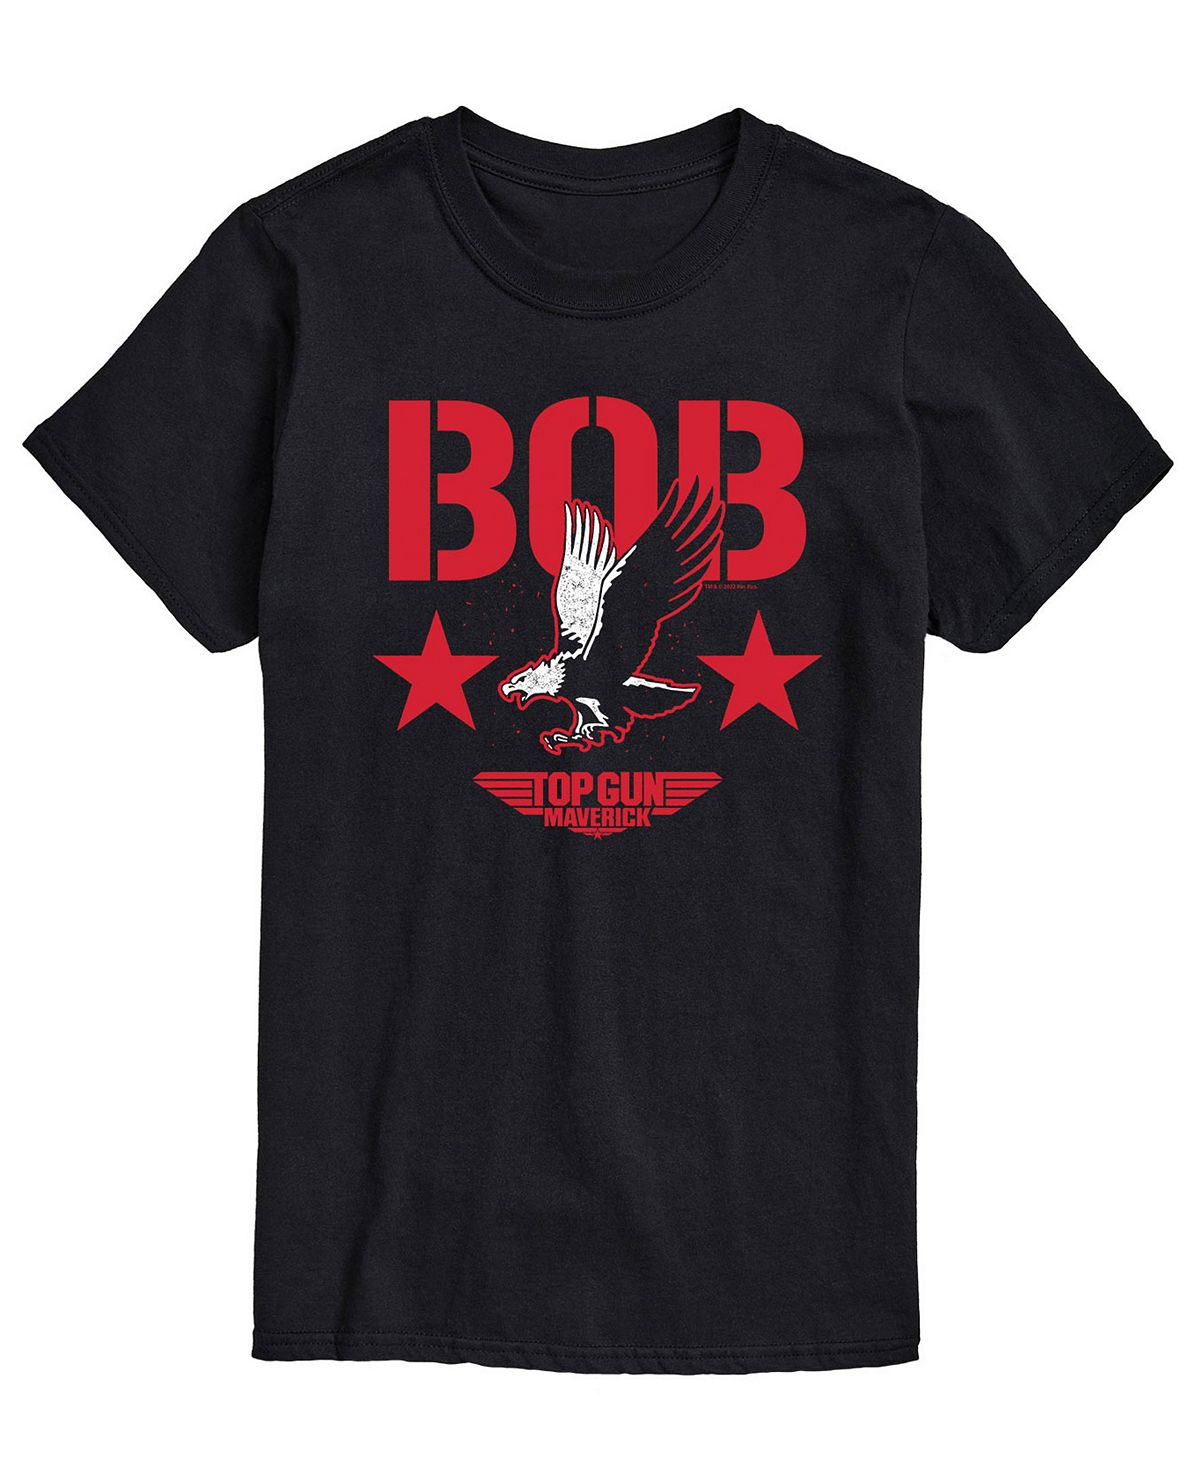 Мужская футболка top gun maverick bob AIRWAVES, черный